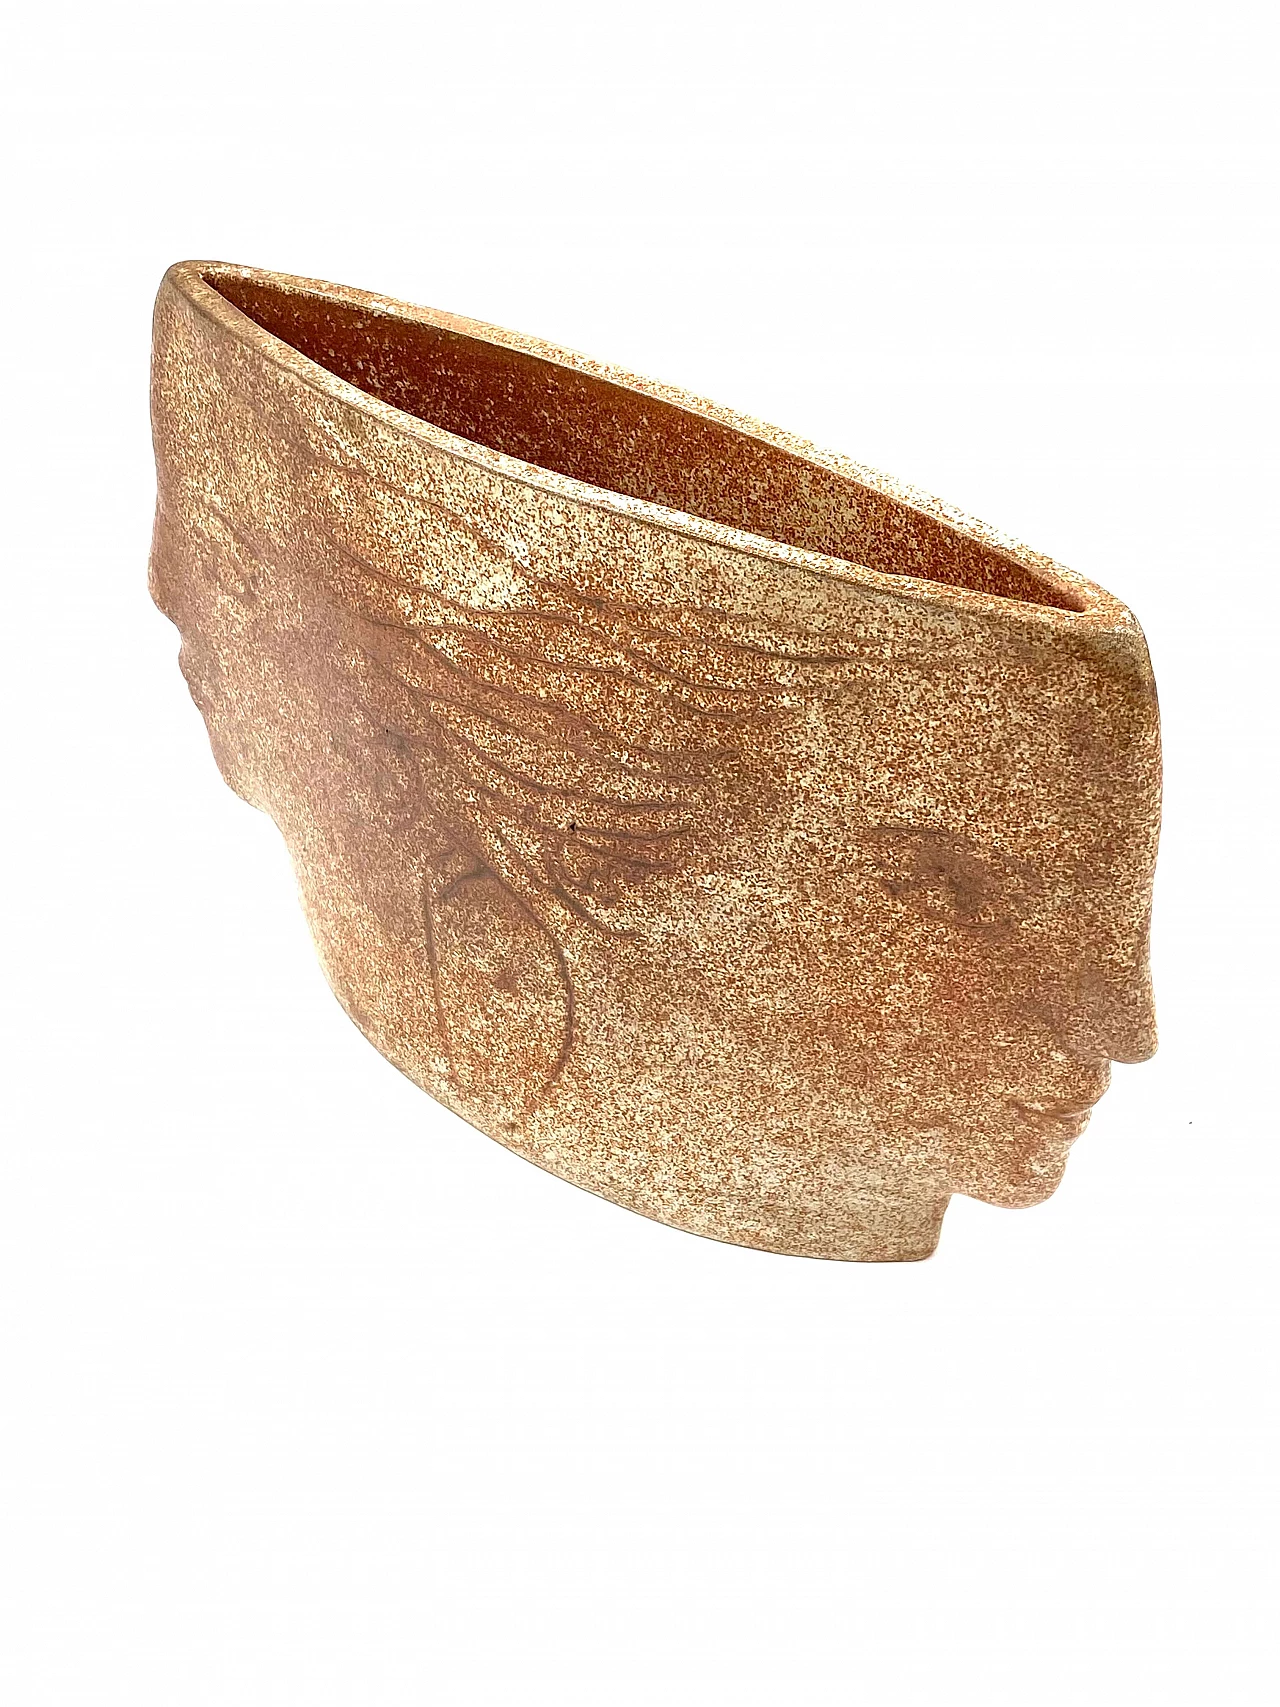 Vaso in ceramica Visages, anni '60 28